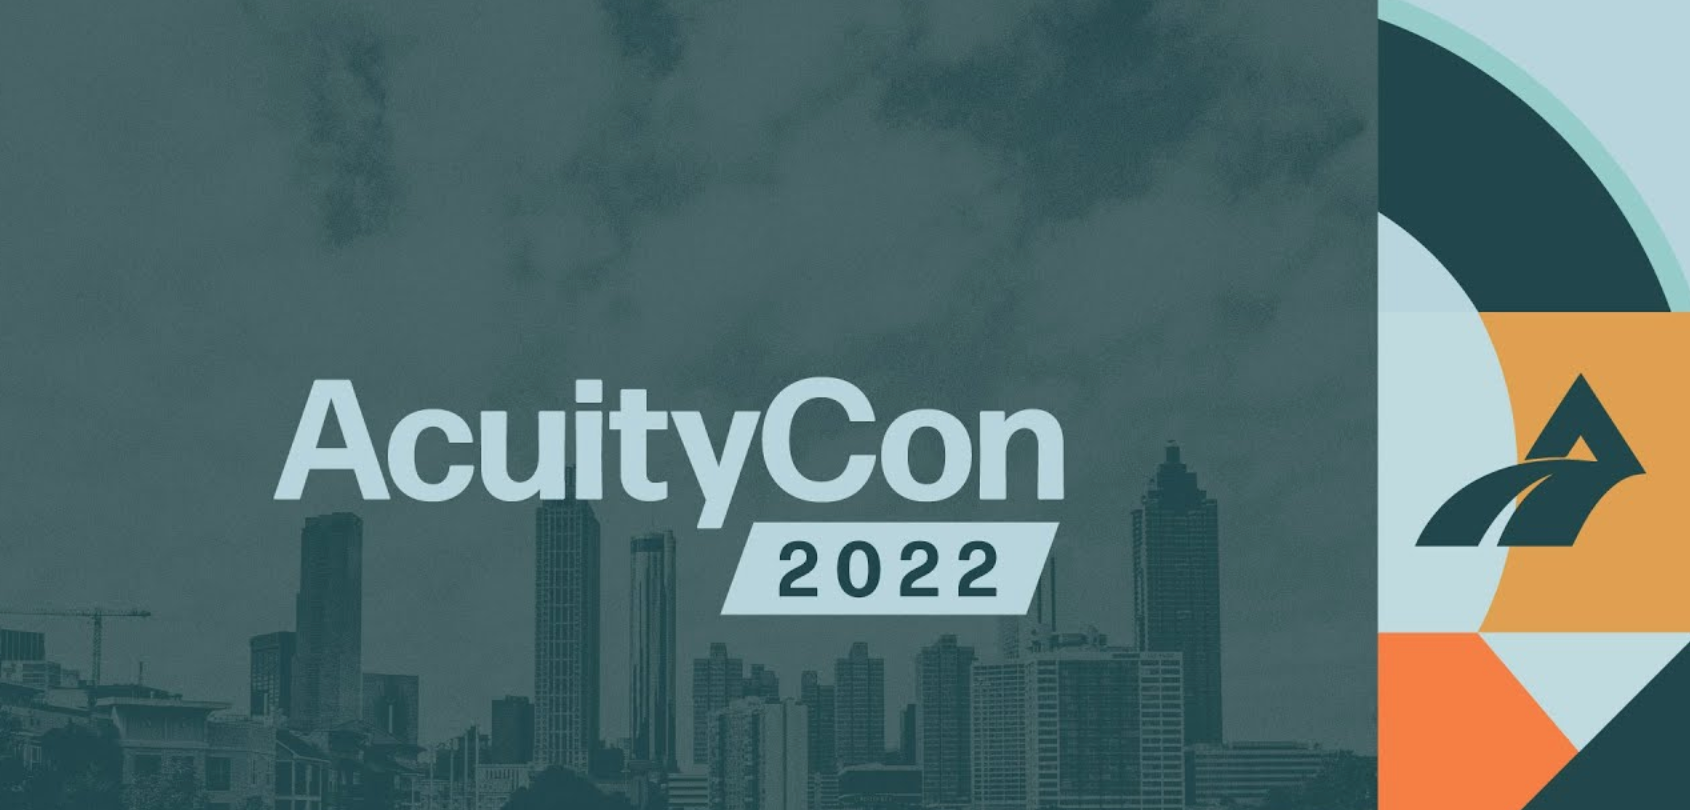 AcuityCon 2022